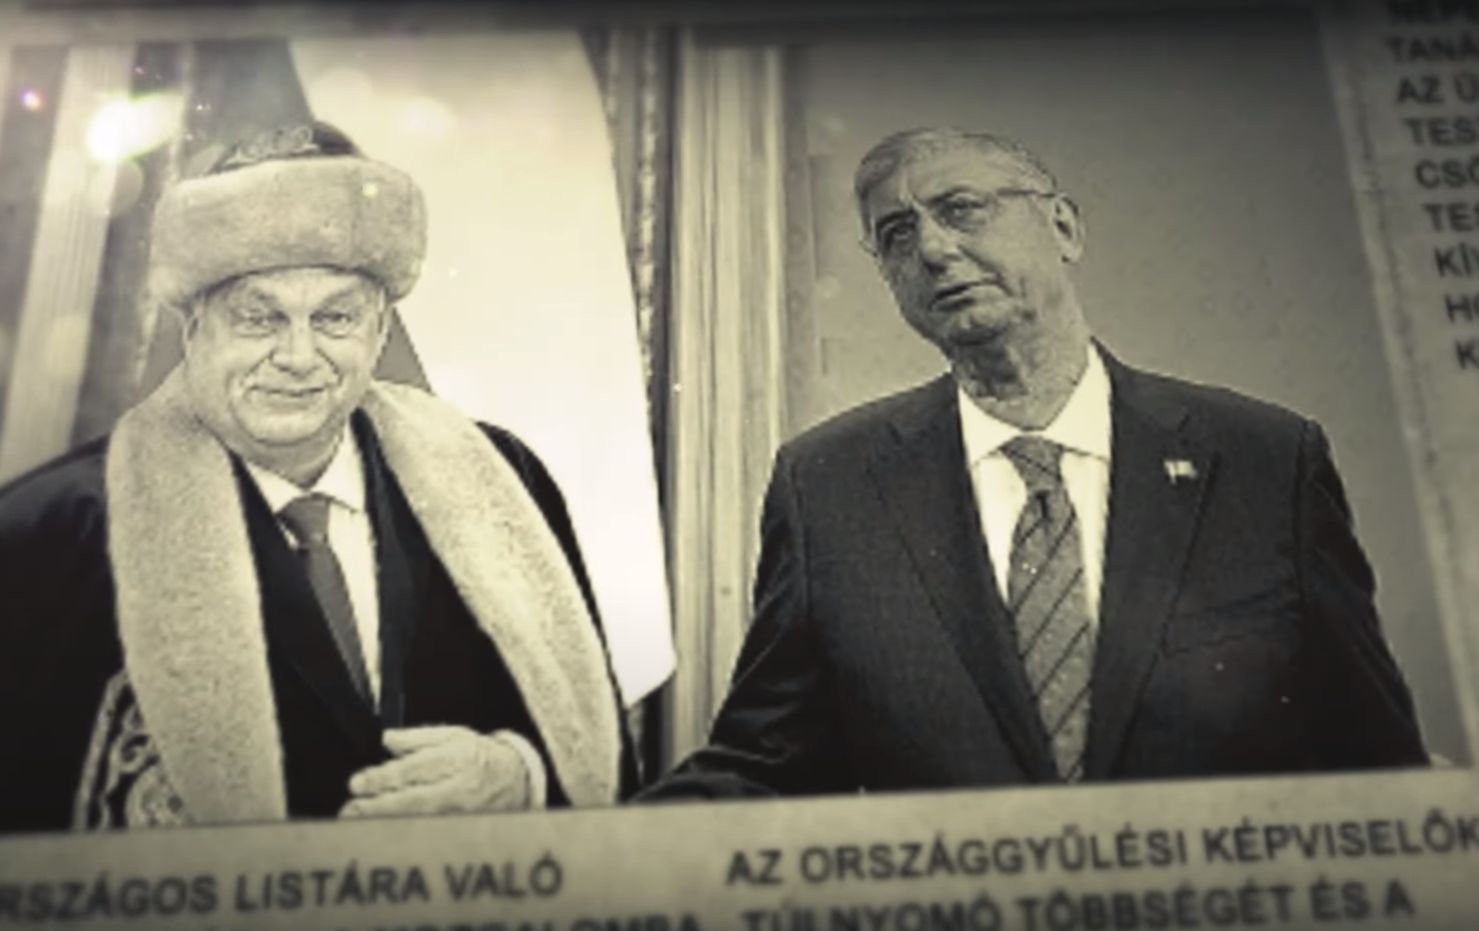 NER-híradó: Az Apró-villában tanácskozott a Fidesz-vezérkar